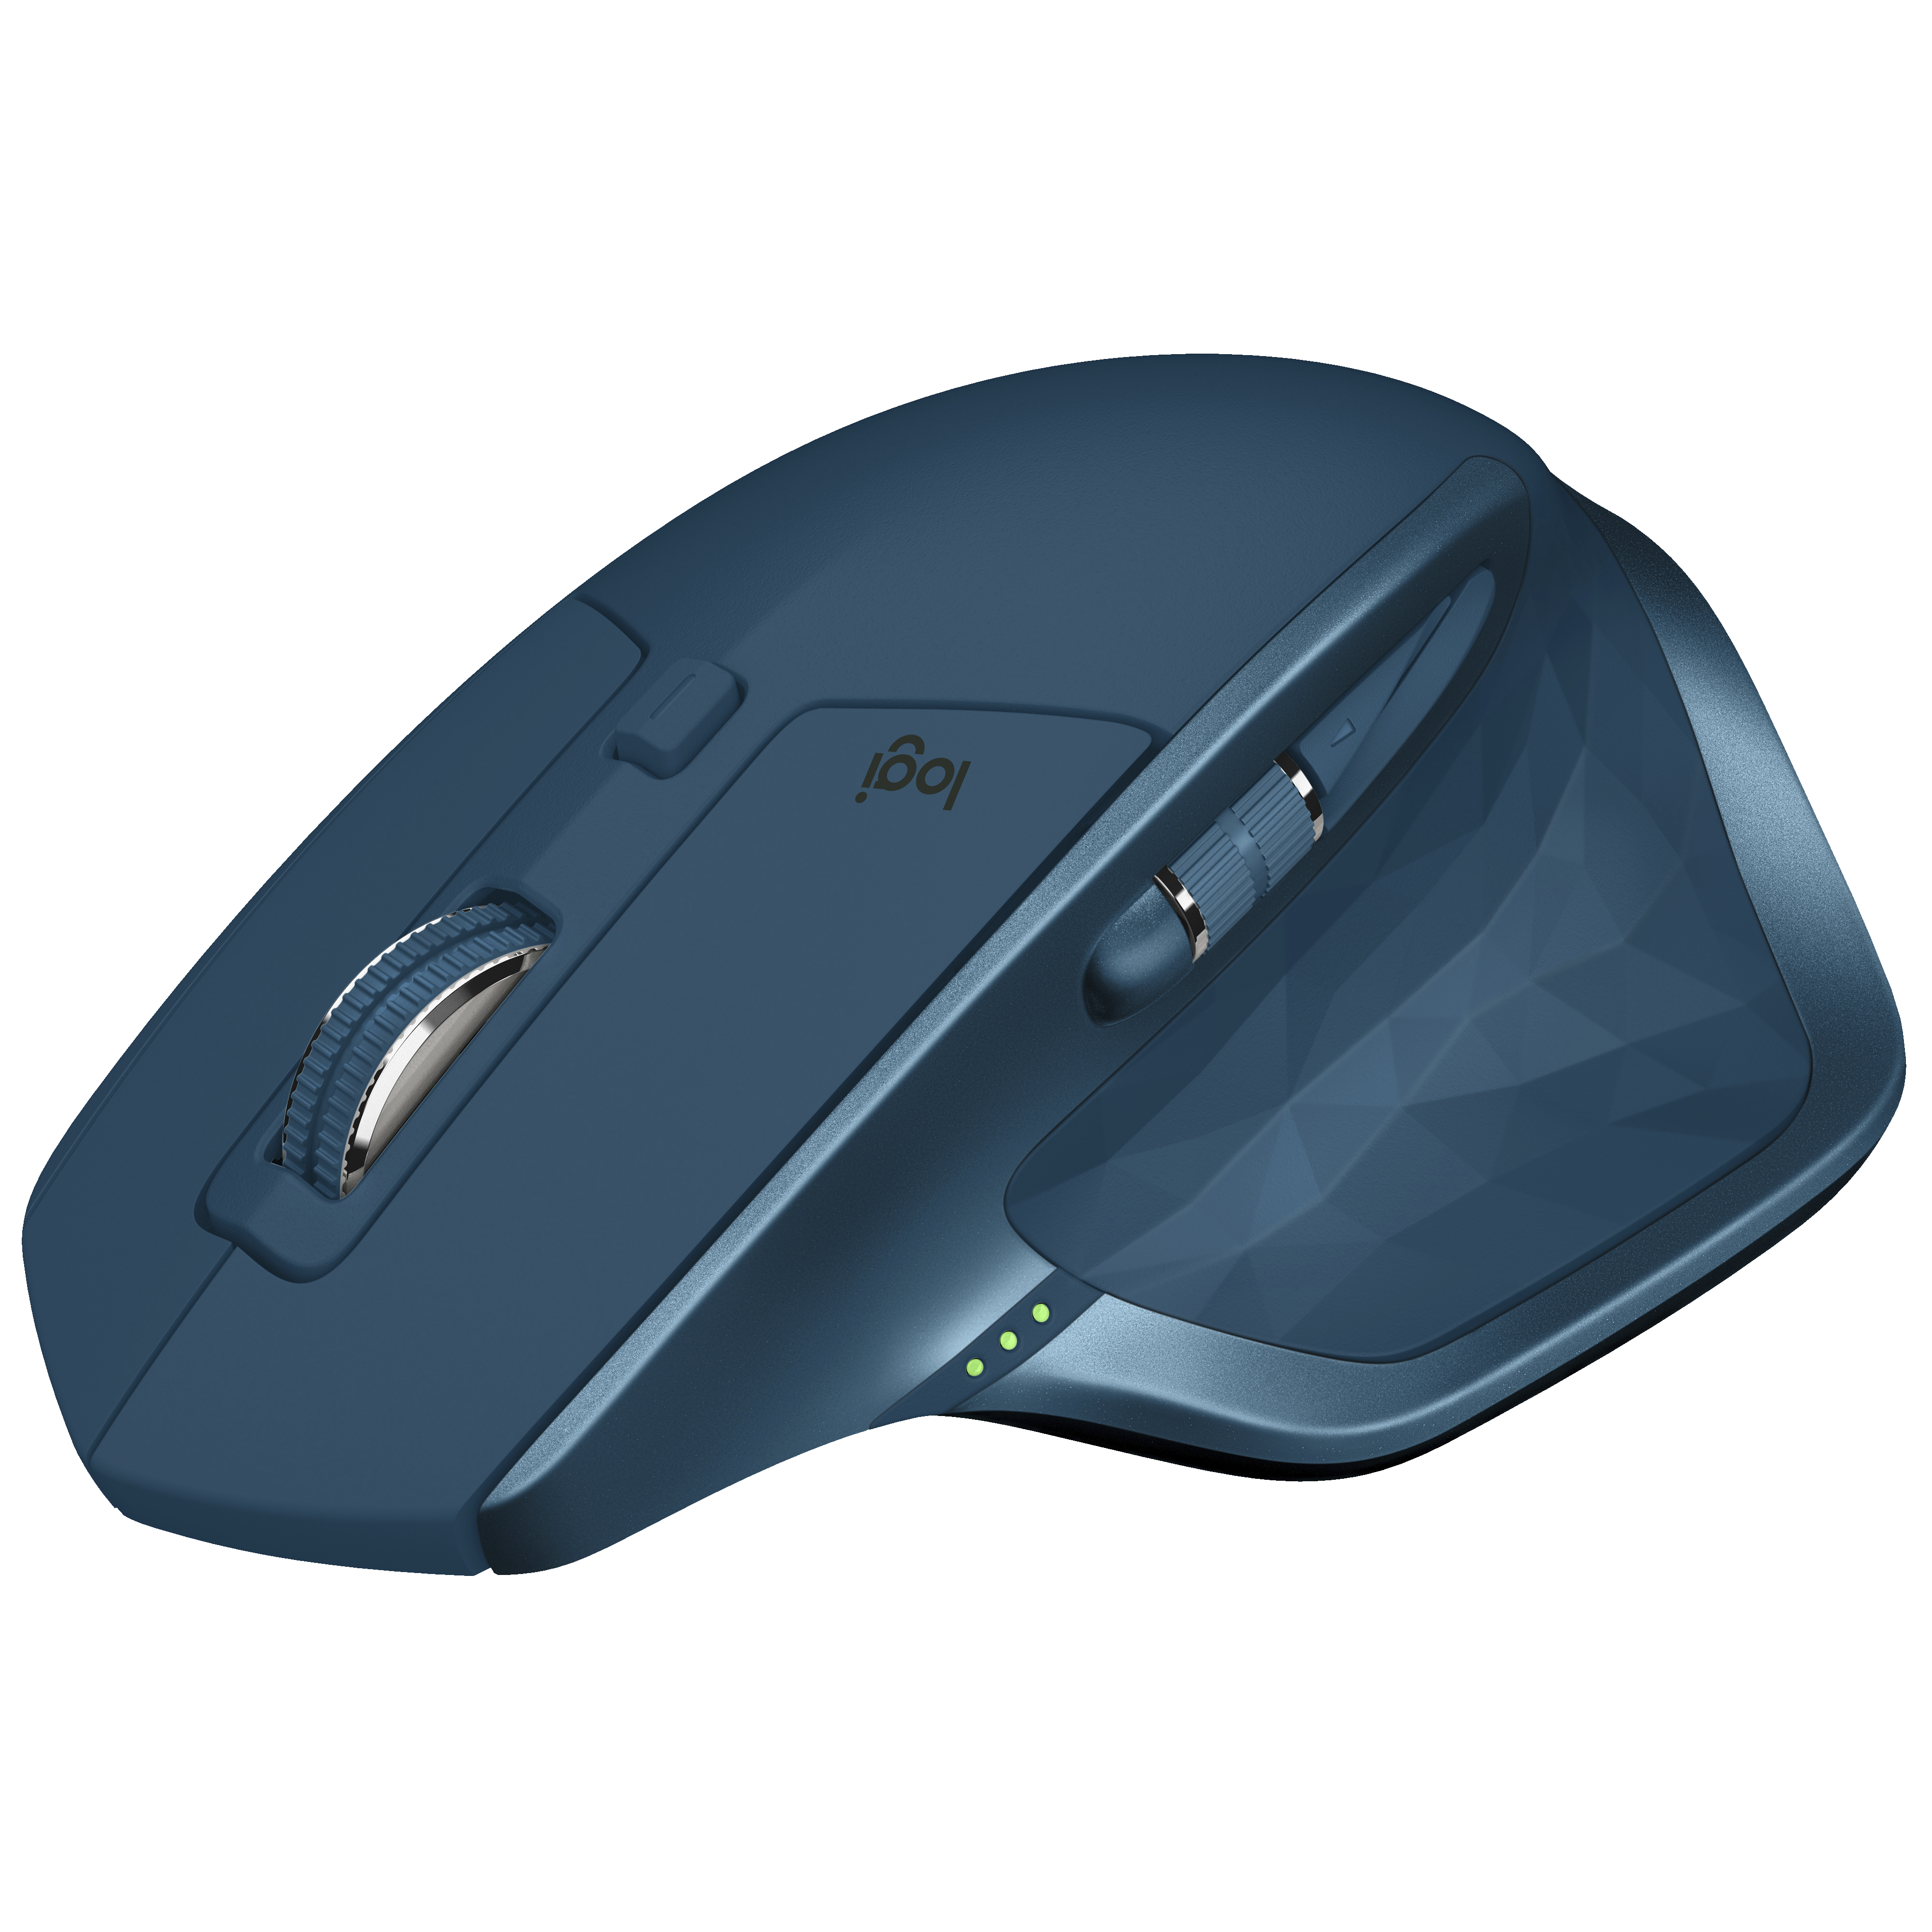 Logitech MX Master 2S trådlös mus (grågrön) - Mus och Tangentbord ...